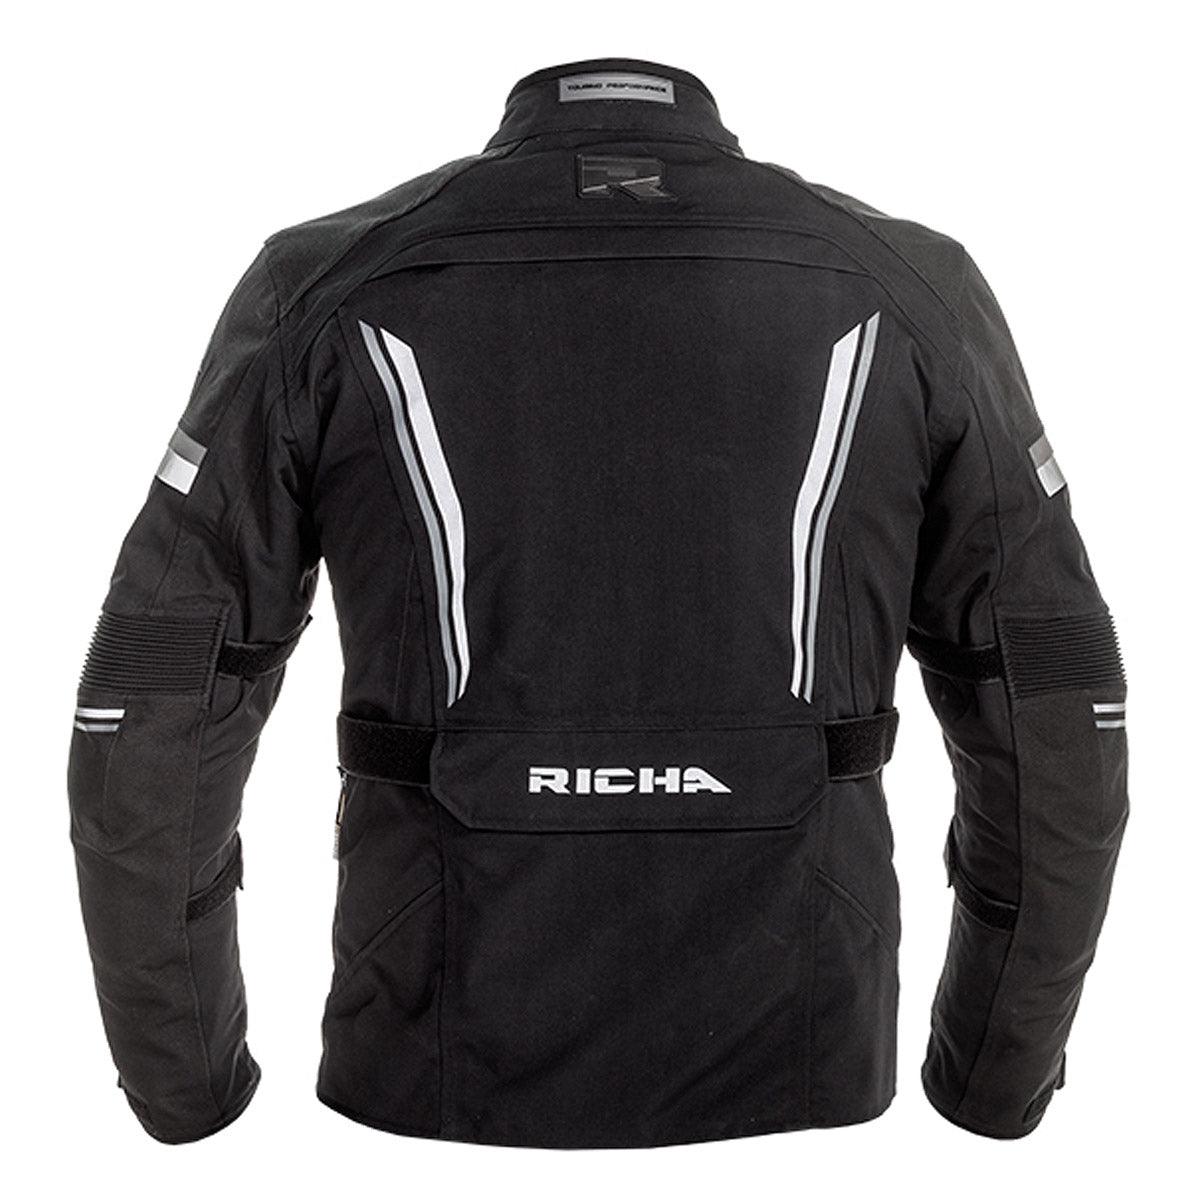 Richa Infinity 2 Pro Ladies Jacket WP Black - Motorcycle Clothing